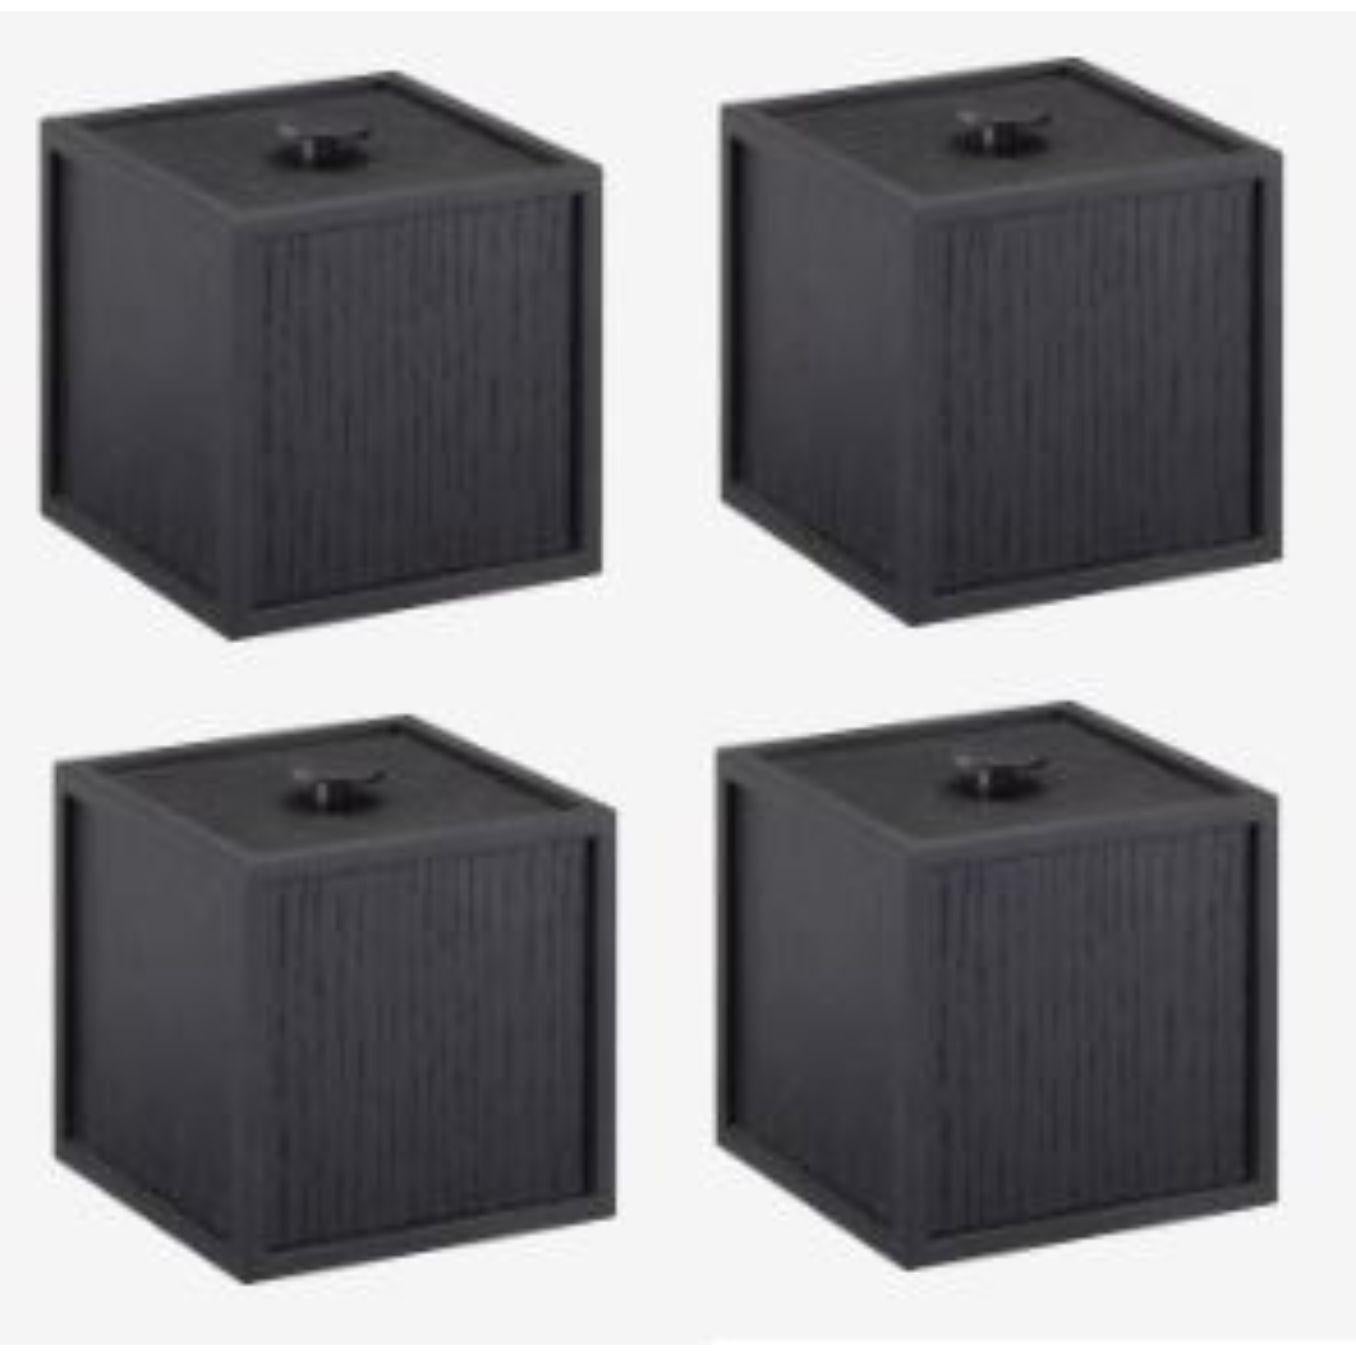 Ensemble de 4 boîtes 10 en frêne noir de Lassen
Dimensions : D 10 x L 10 x H 10 cm 
Matériaux : Finér, mélaminé, mélaminé, métal, placage
Poids : 0.85 Kg

Frame Box est une boîte carrée de forme cubique. Les boîtes simples s'inspirent du bougeoir